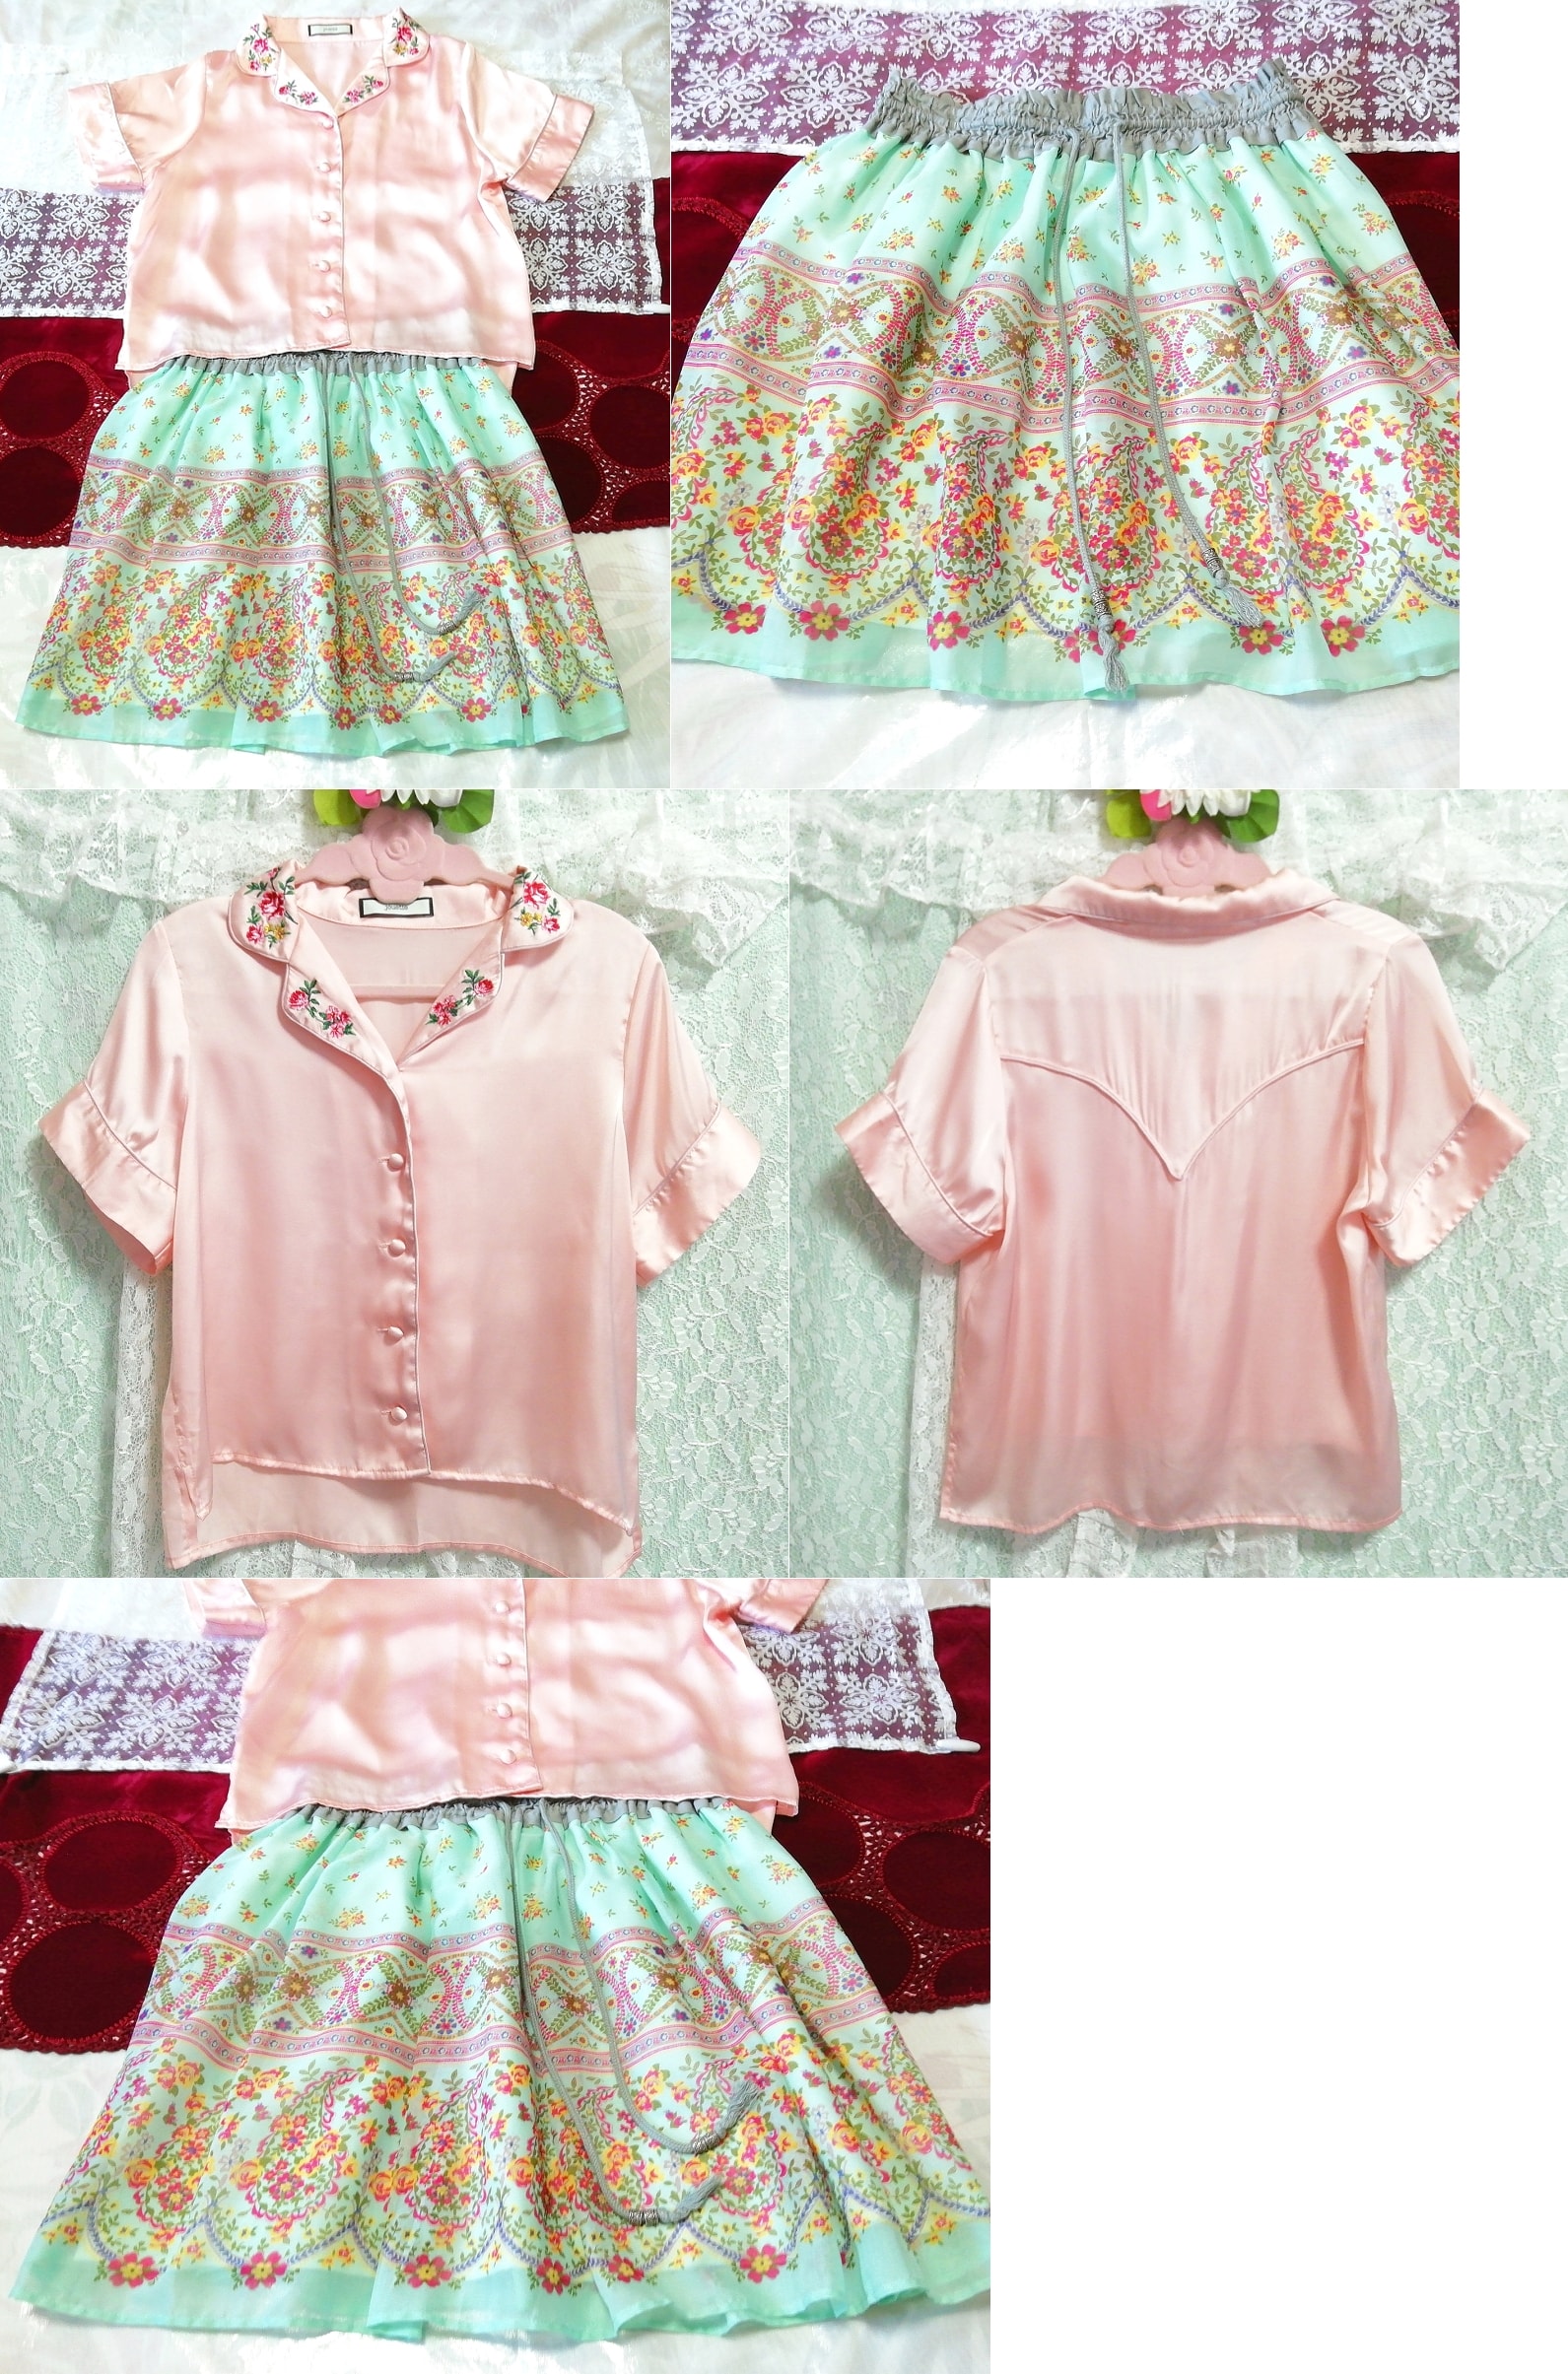 粉色缎面衬衫花朵刺绣束腰外衣睡衣绿色民族图案裙子 2P, 时尚, 女士时装, 睡衣